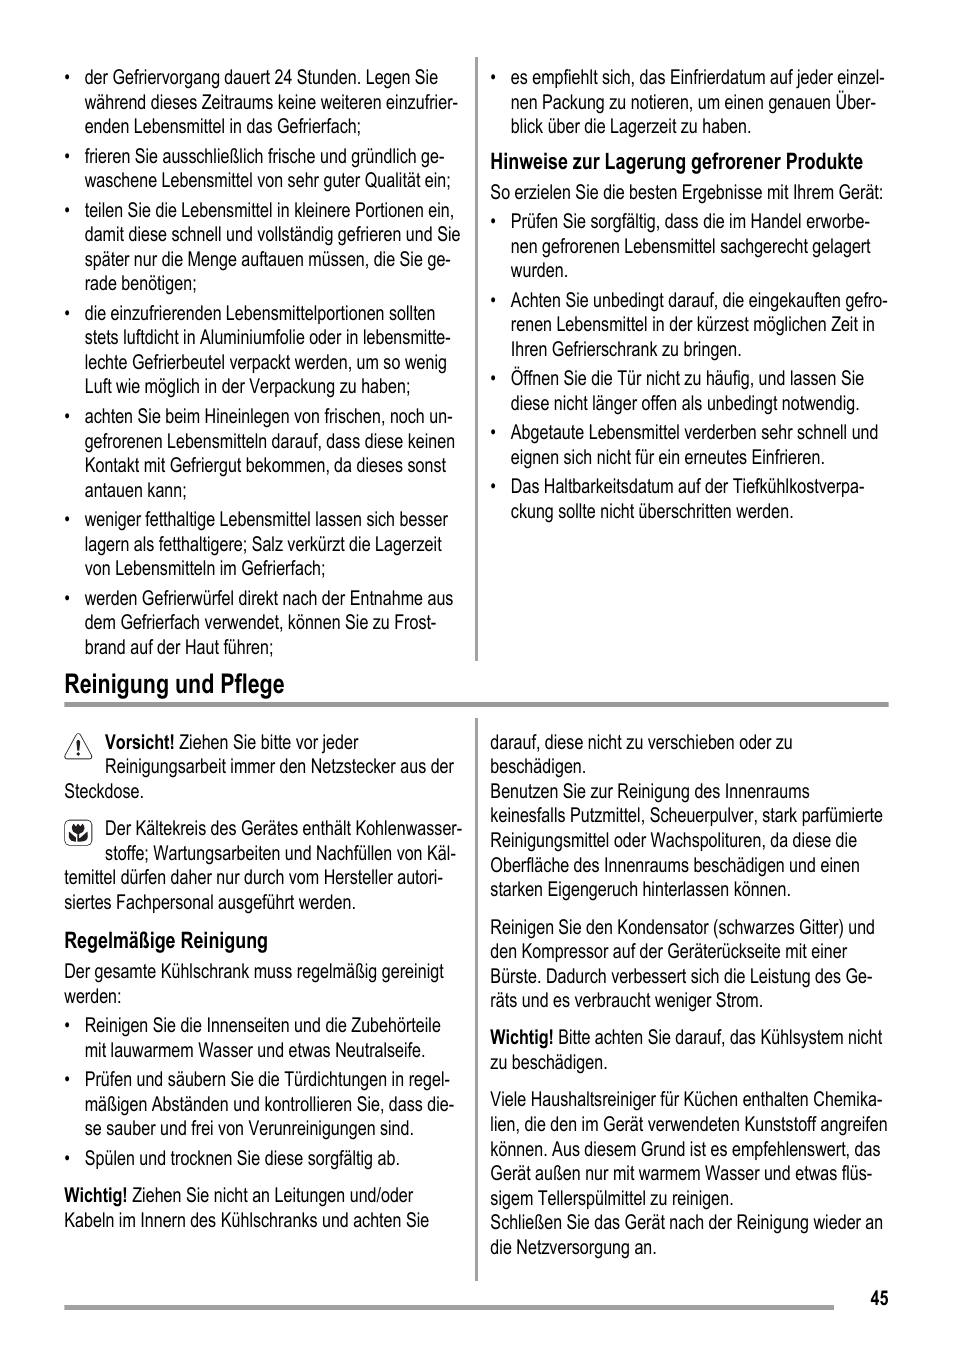 Reinigung und pflege | ZANKER KBB 24001 SK User Manual | Page 45 / 56